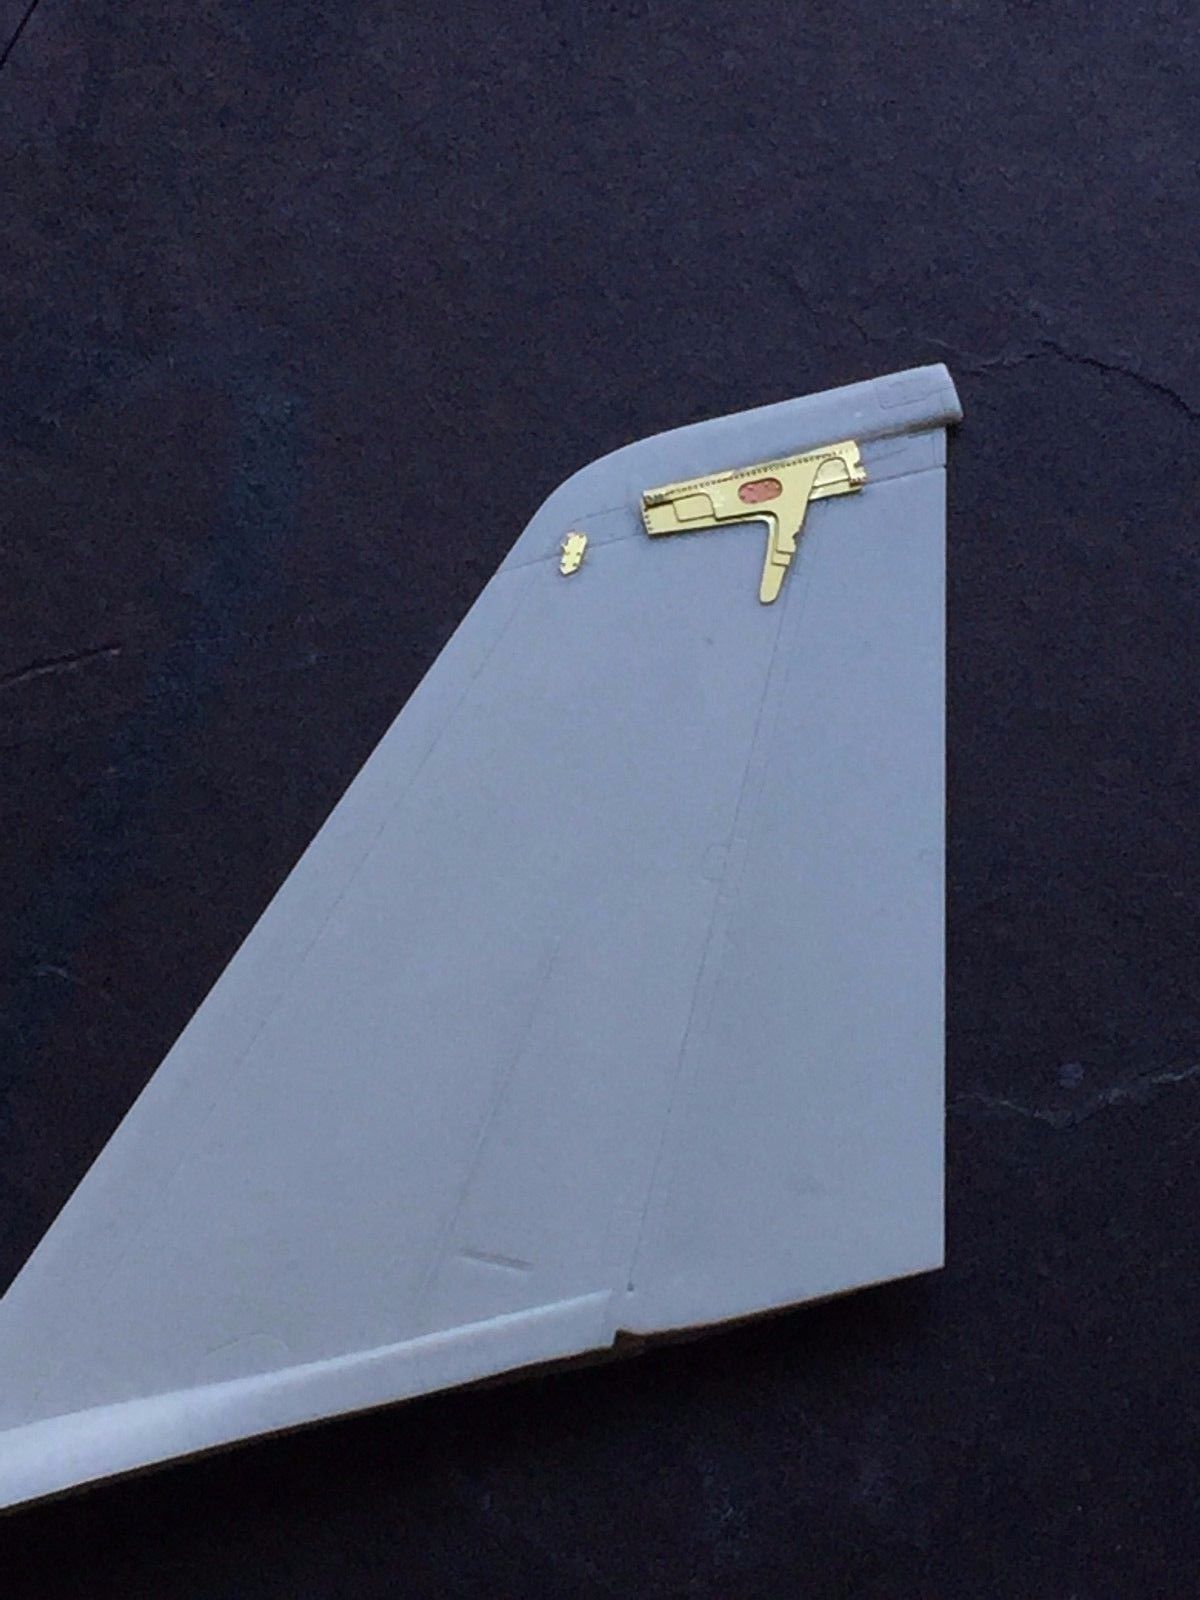 1/48 F-14 雄猫战斗机后期型垂直尾翼加固板蚀刻片(配田宫)